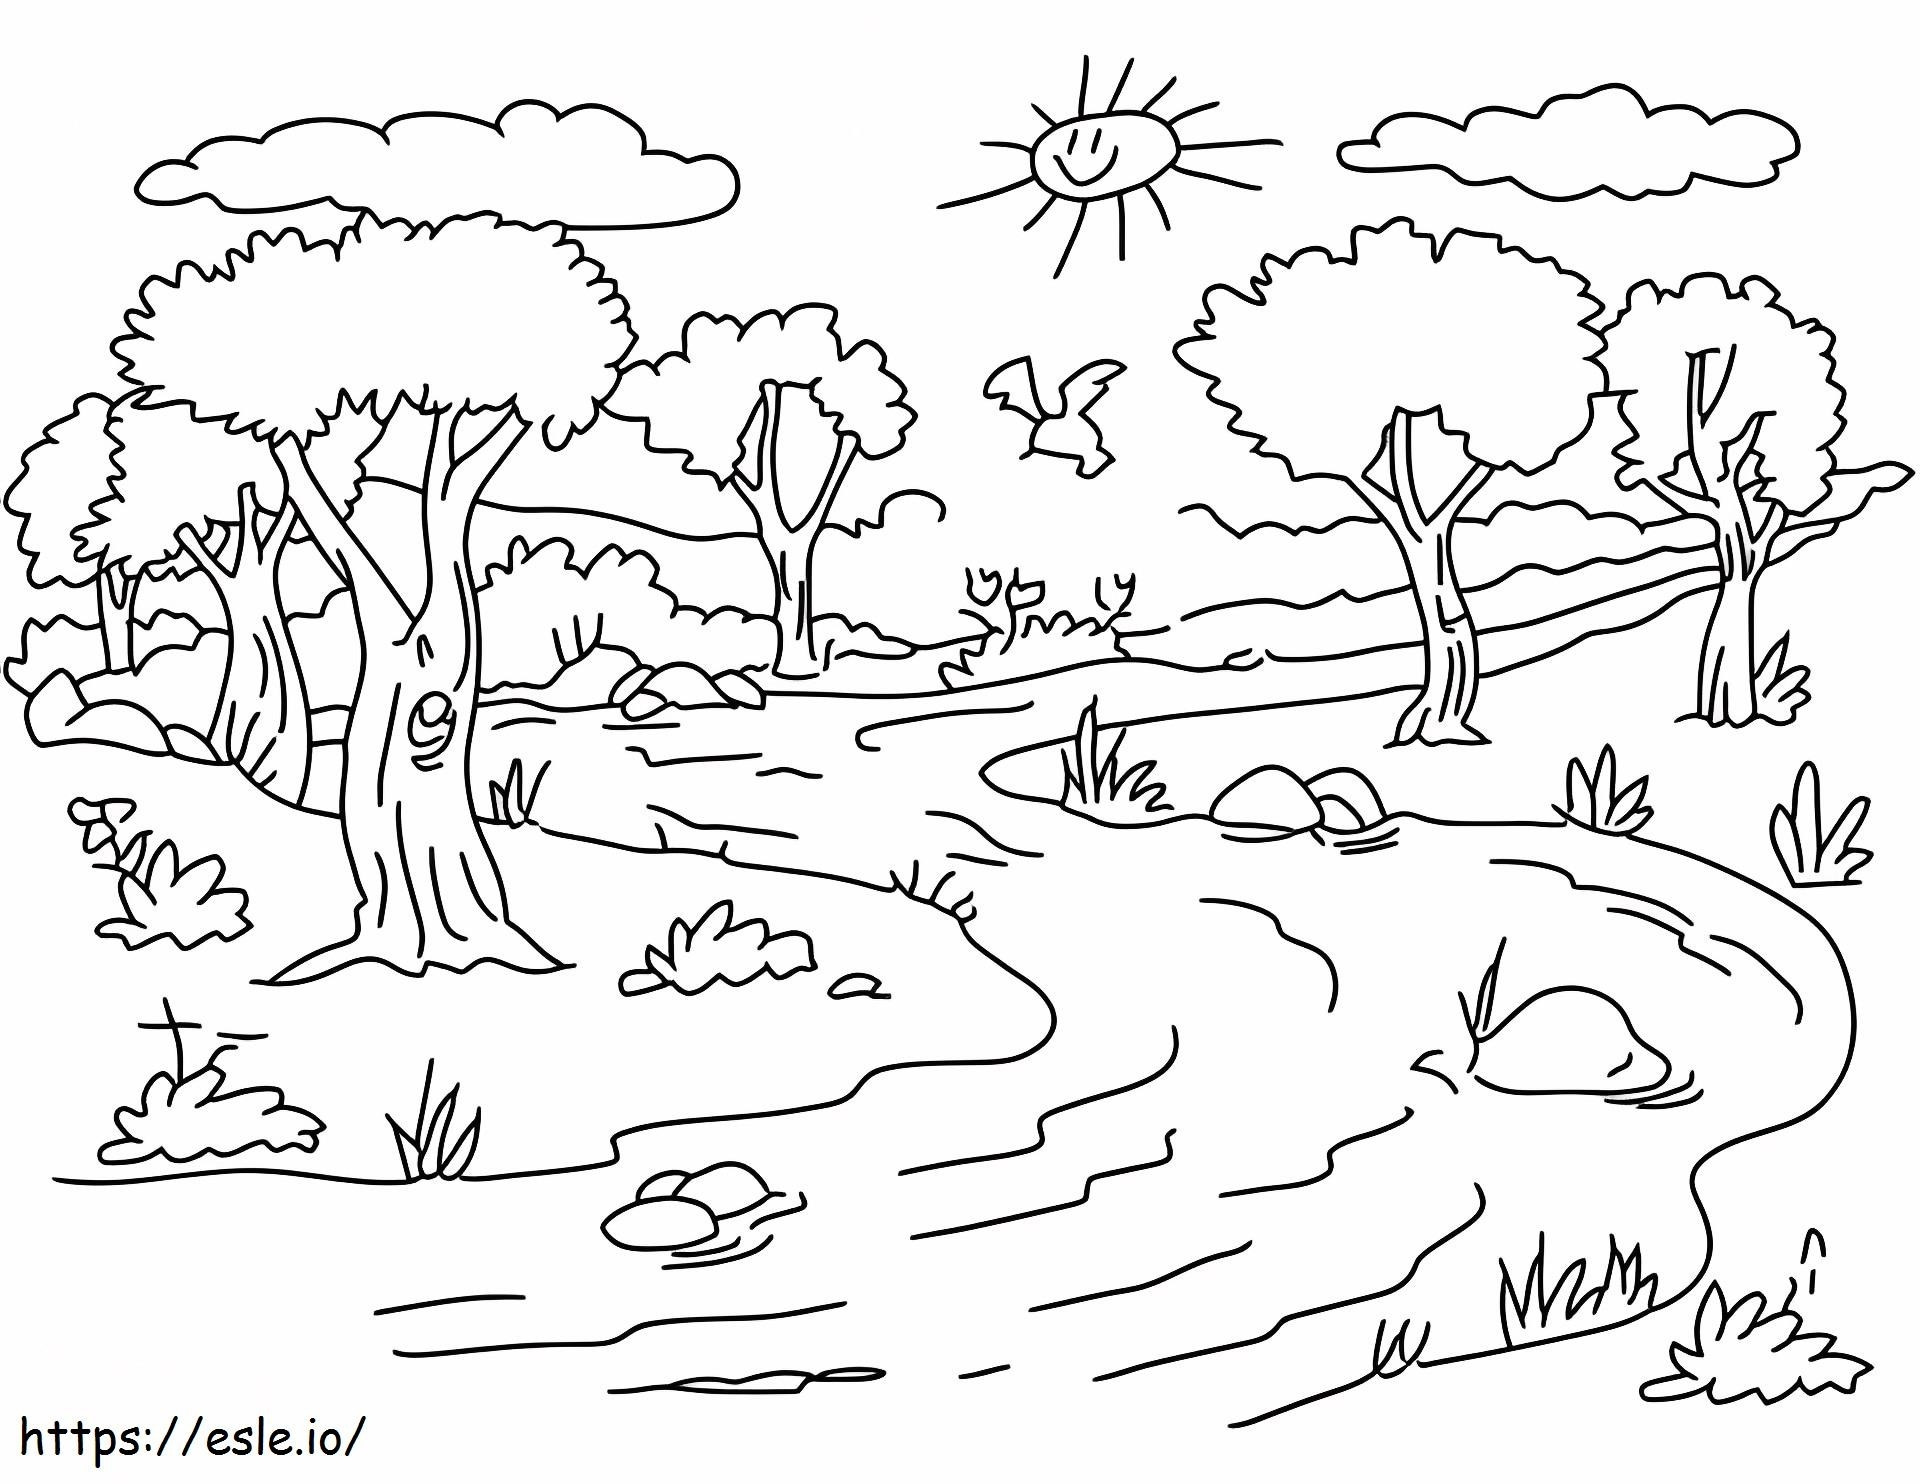 River Landscapea4 coloring page